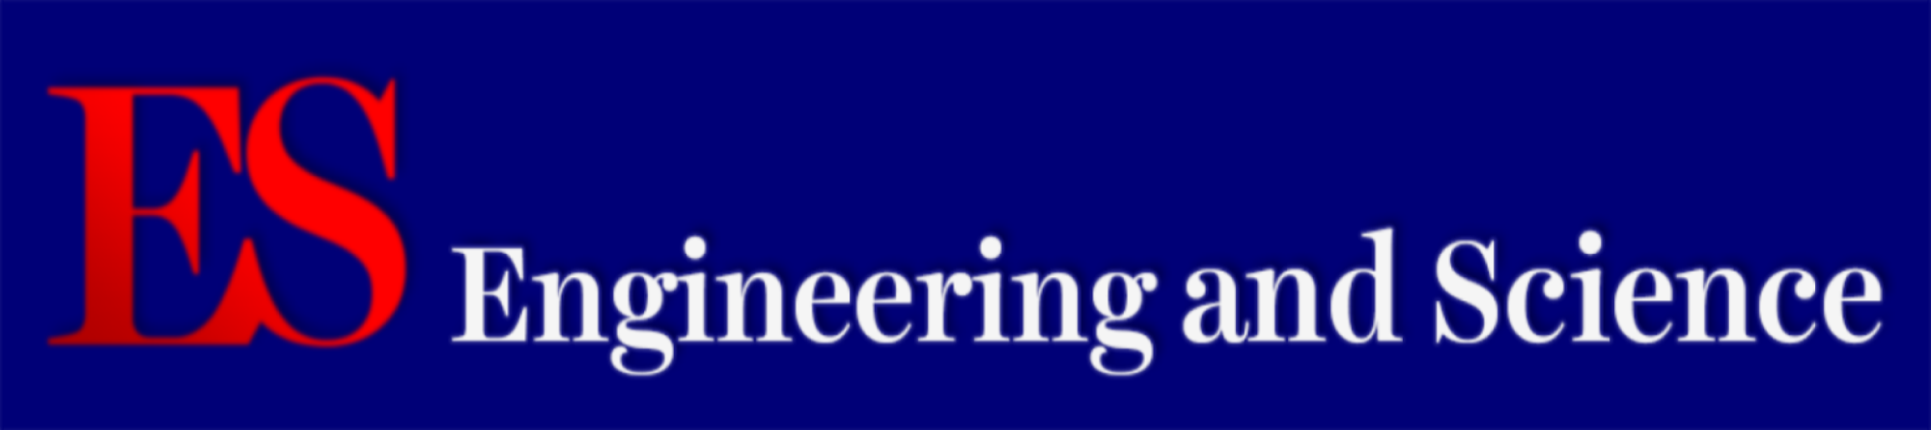 Jornal científico de engenharia e ciências da FAET - UFMT.